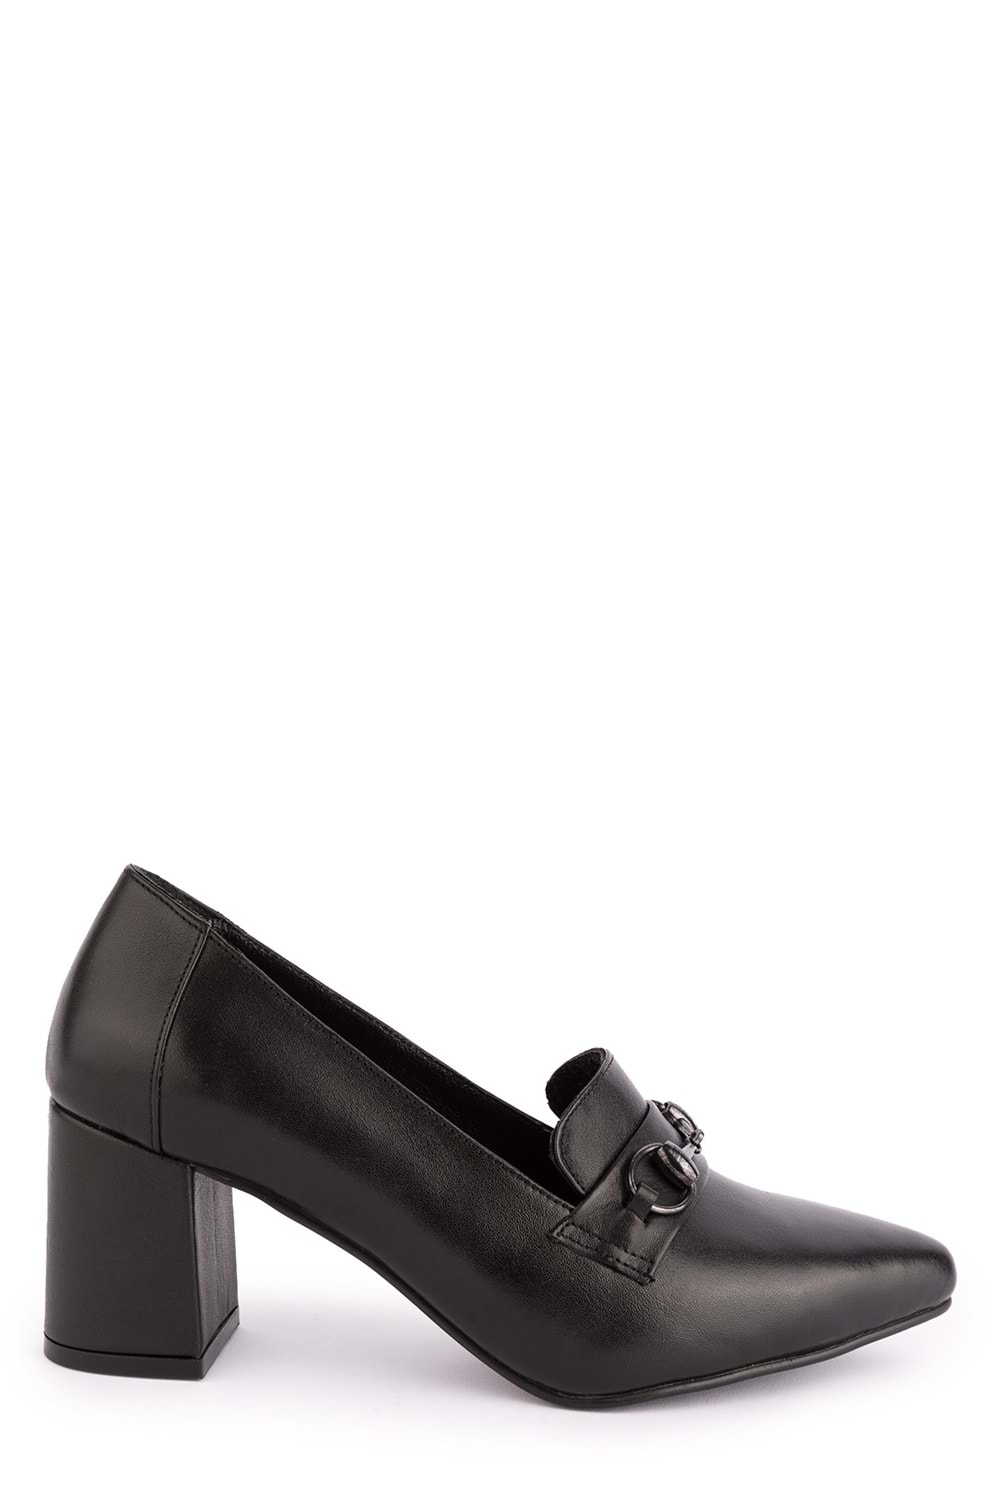 Gondol Kadın Hakiki Deri Klasik Topuklu Toka Detaylı Ayakkabı şhn.956 - Siyah - 35